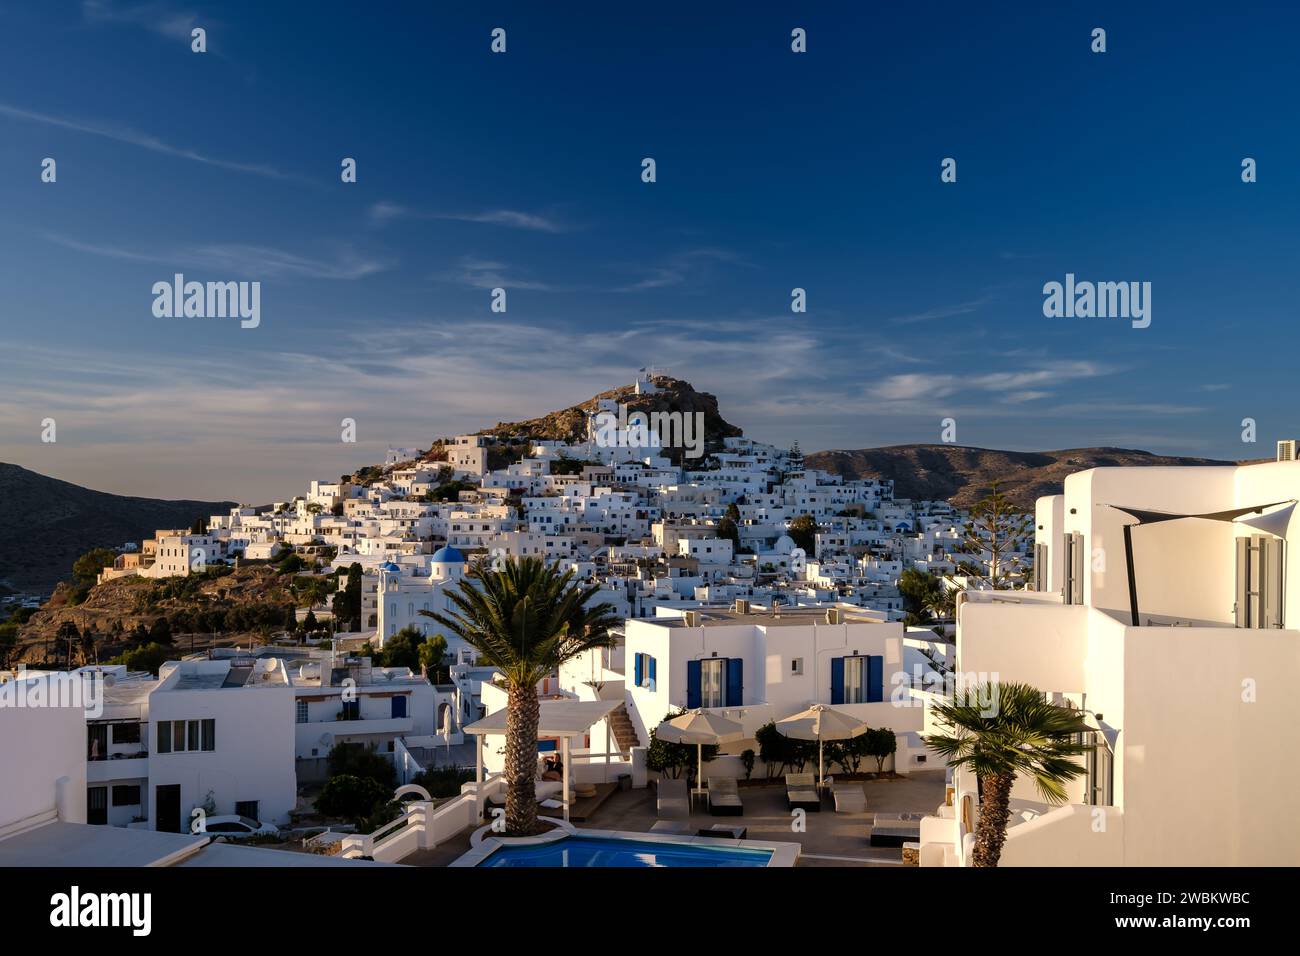 IOS, Griechenland - 14. September 2023 : Blick auf ein malerisches Hotel mit Swimmingpool und das weiß getünchte Dorf iOS Griechenland im Hintergrund Stockfoto